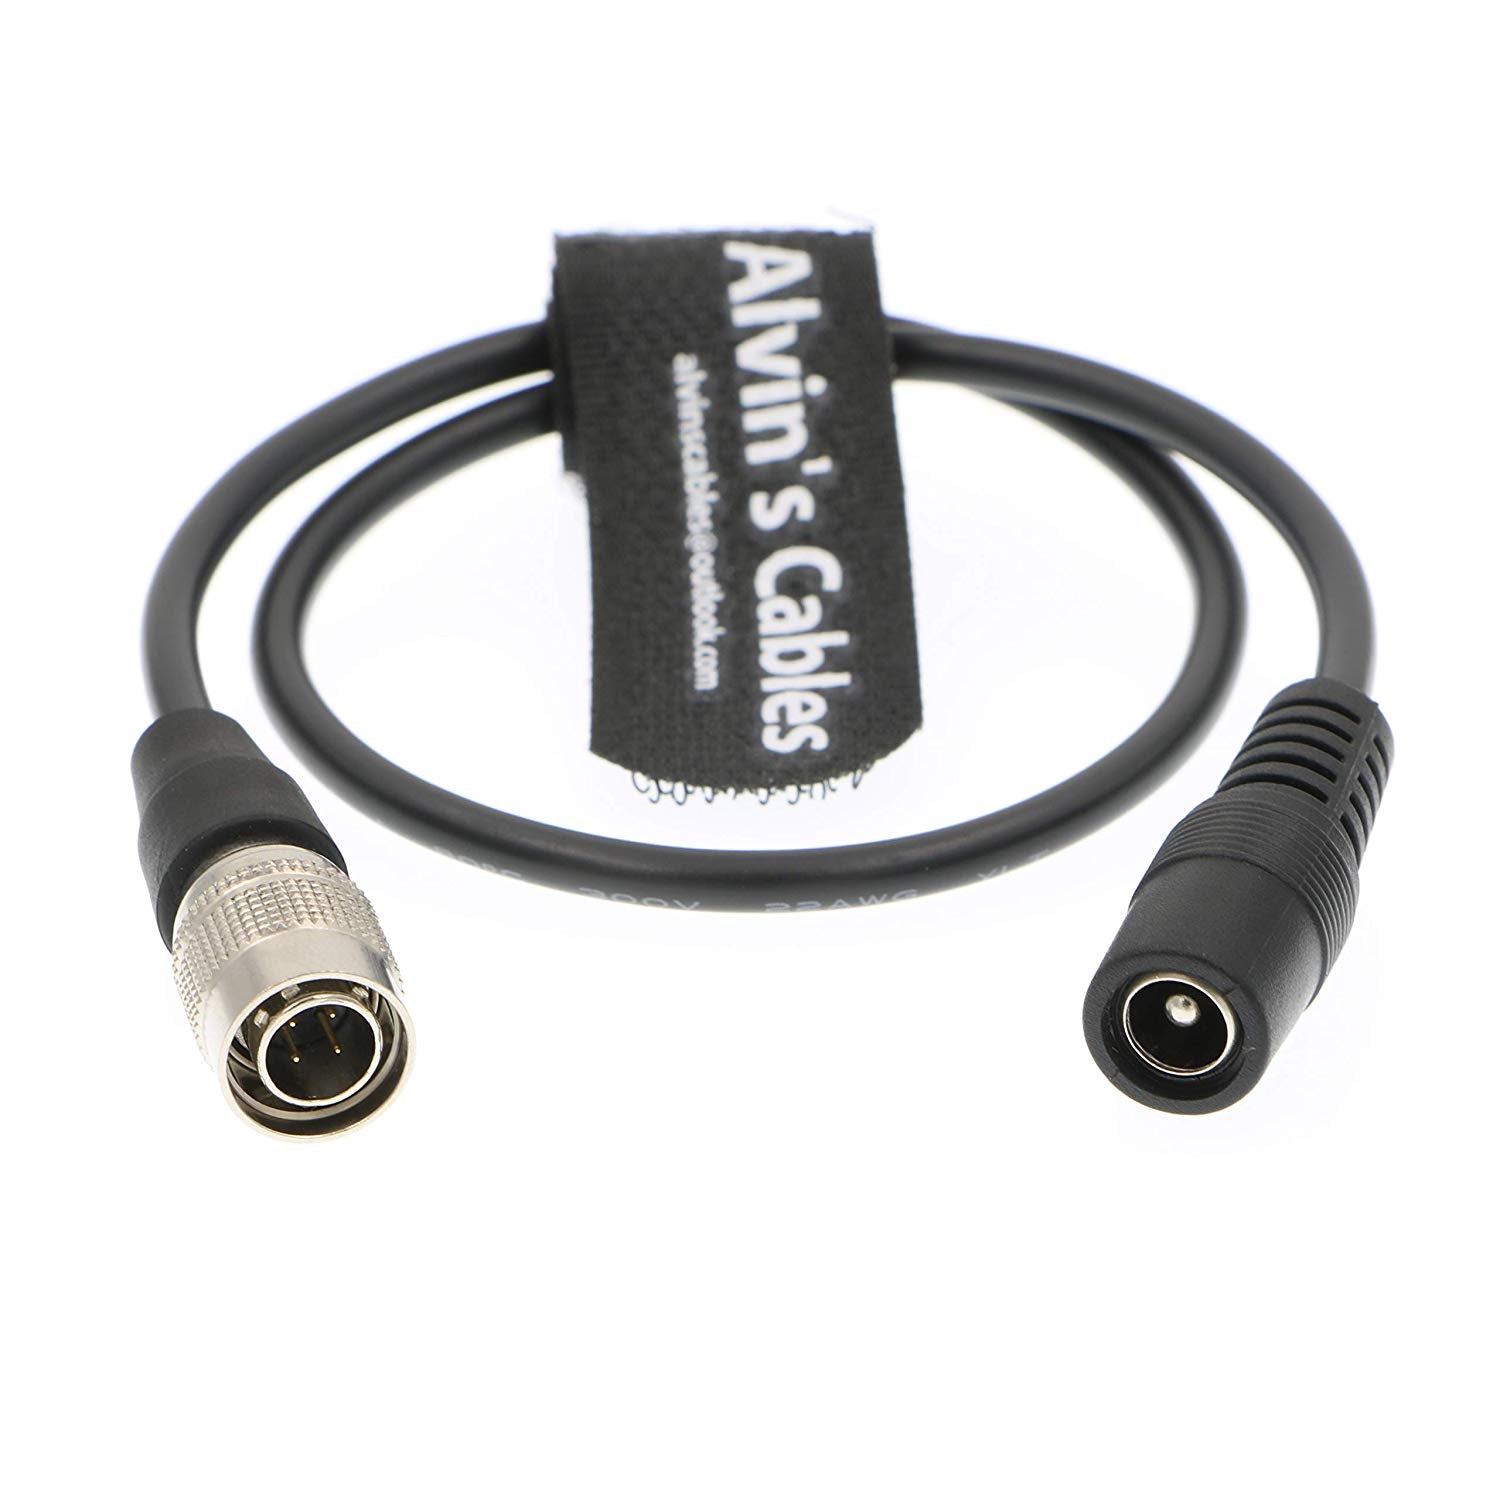 Alvin's Cables Hirose 4 Pin Stecker auf DC Buchse Kabel für Sound Device ZAXCOM Blackmagic